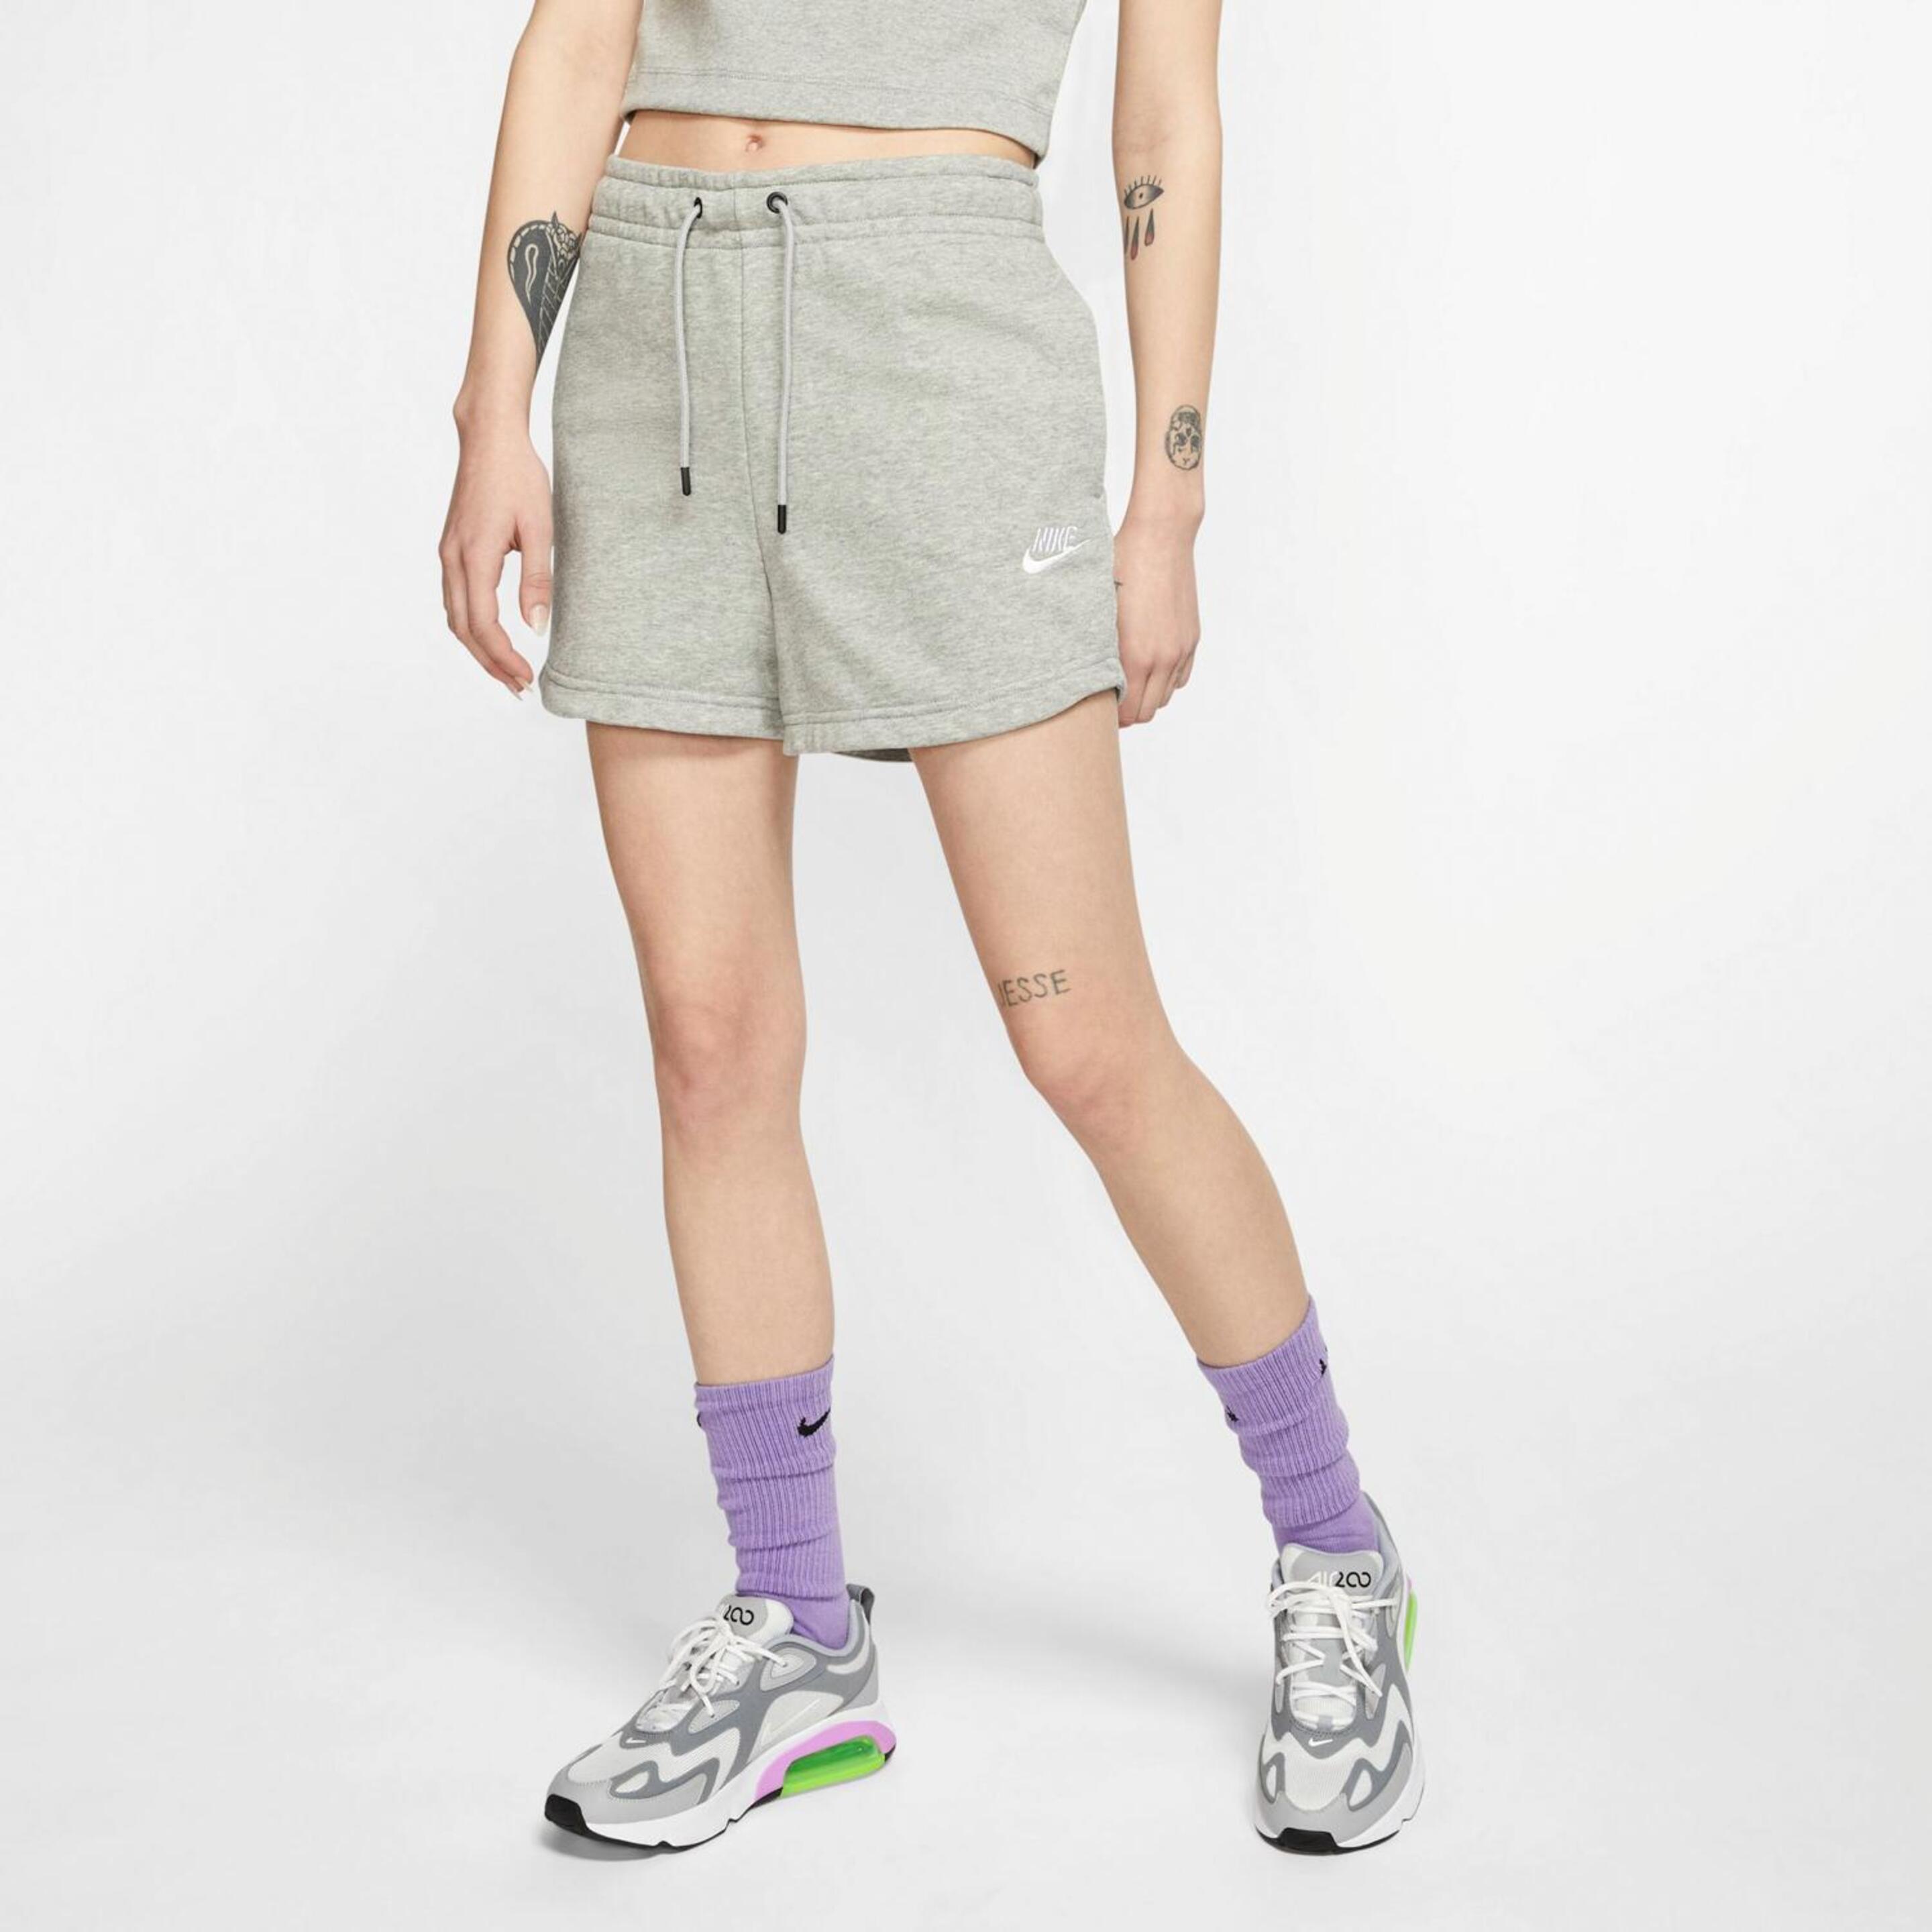 Nike Essential - gris - Pantalón Corto Mujer